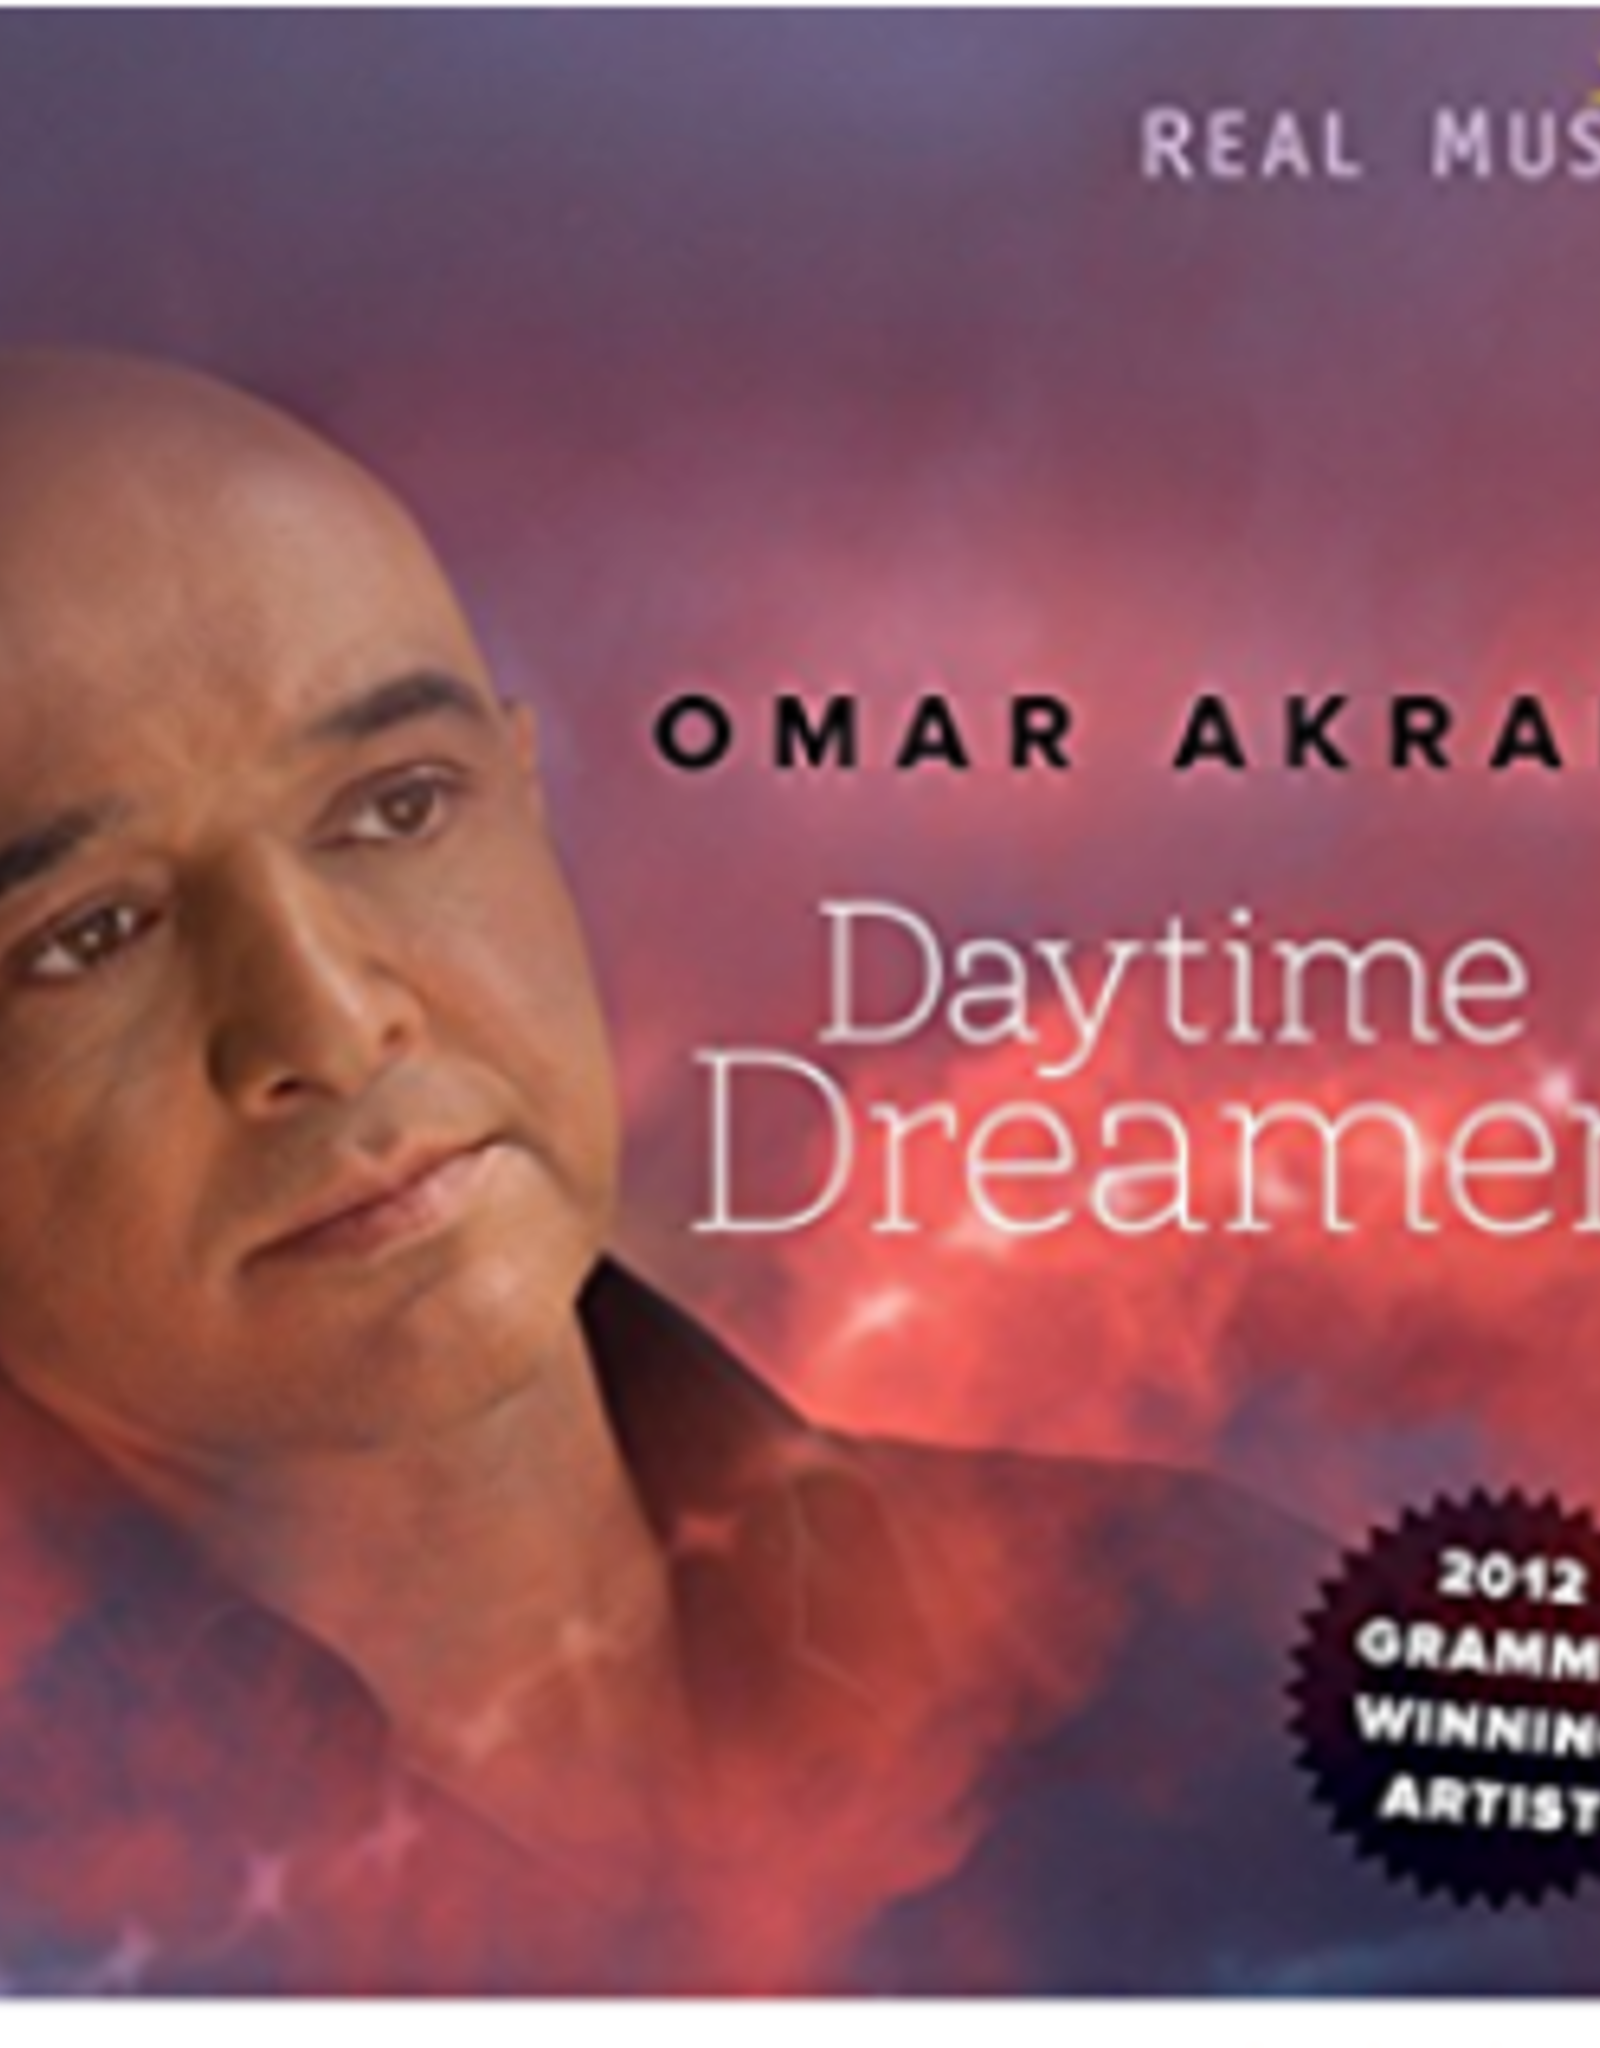 Omar Akram Daytime Dreamer CD by Omar Akram